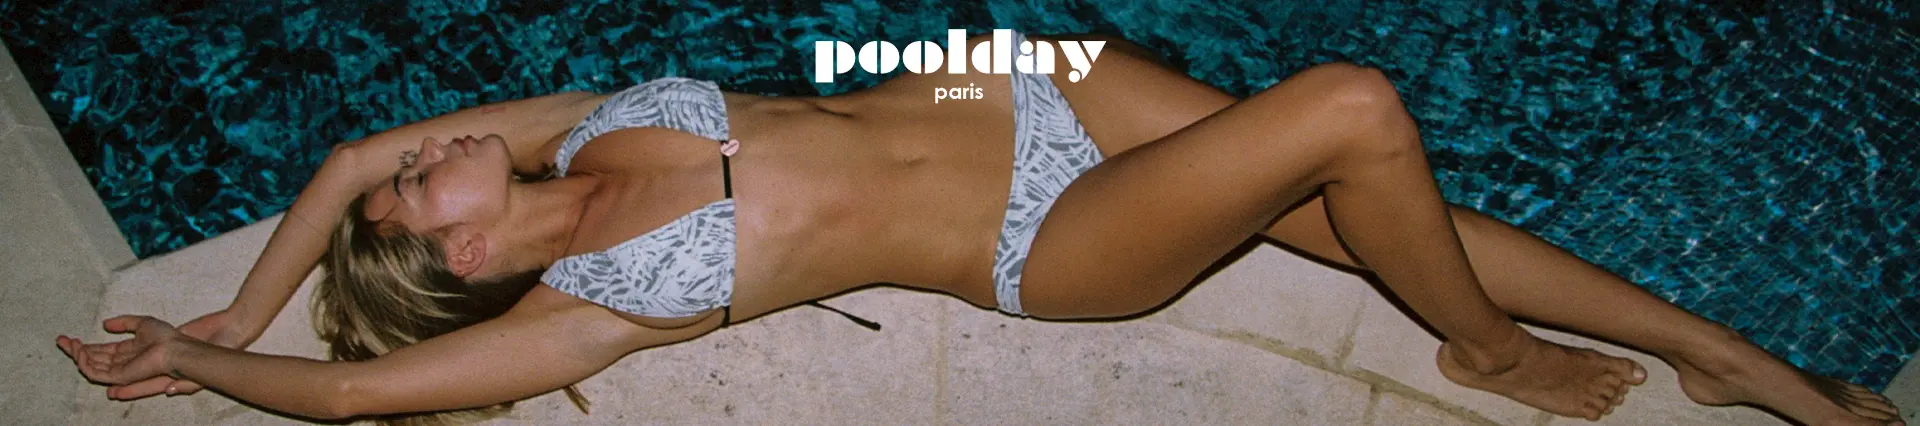 Poolday